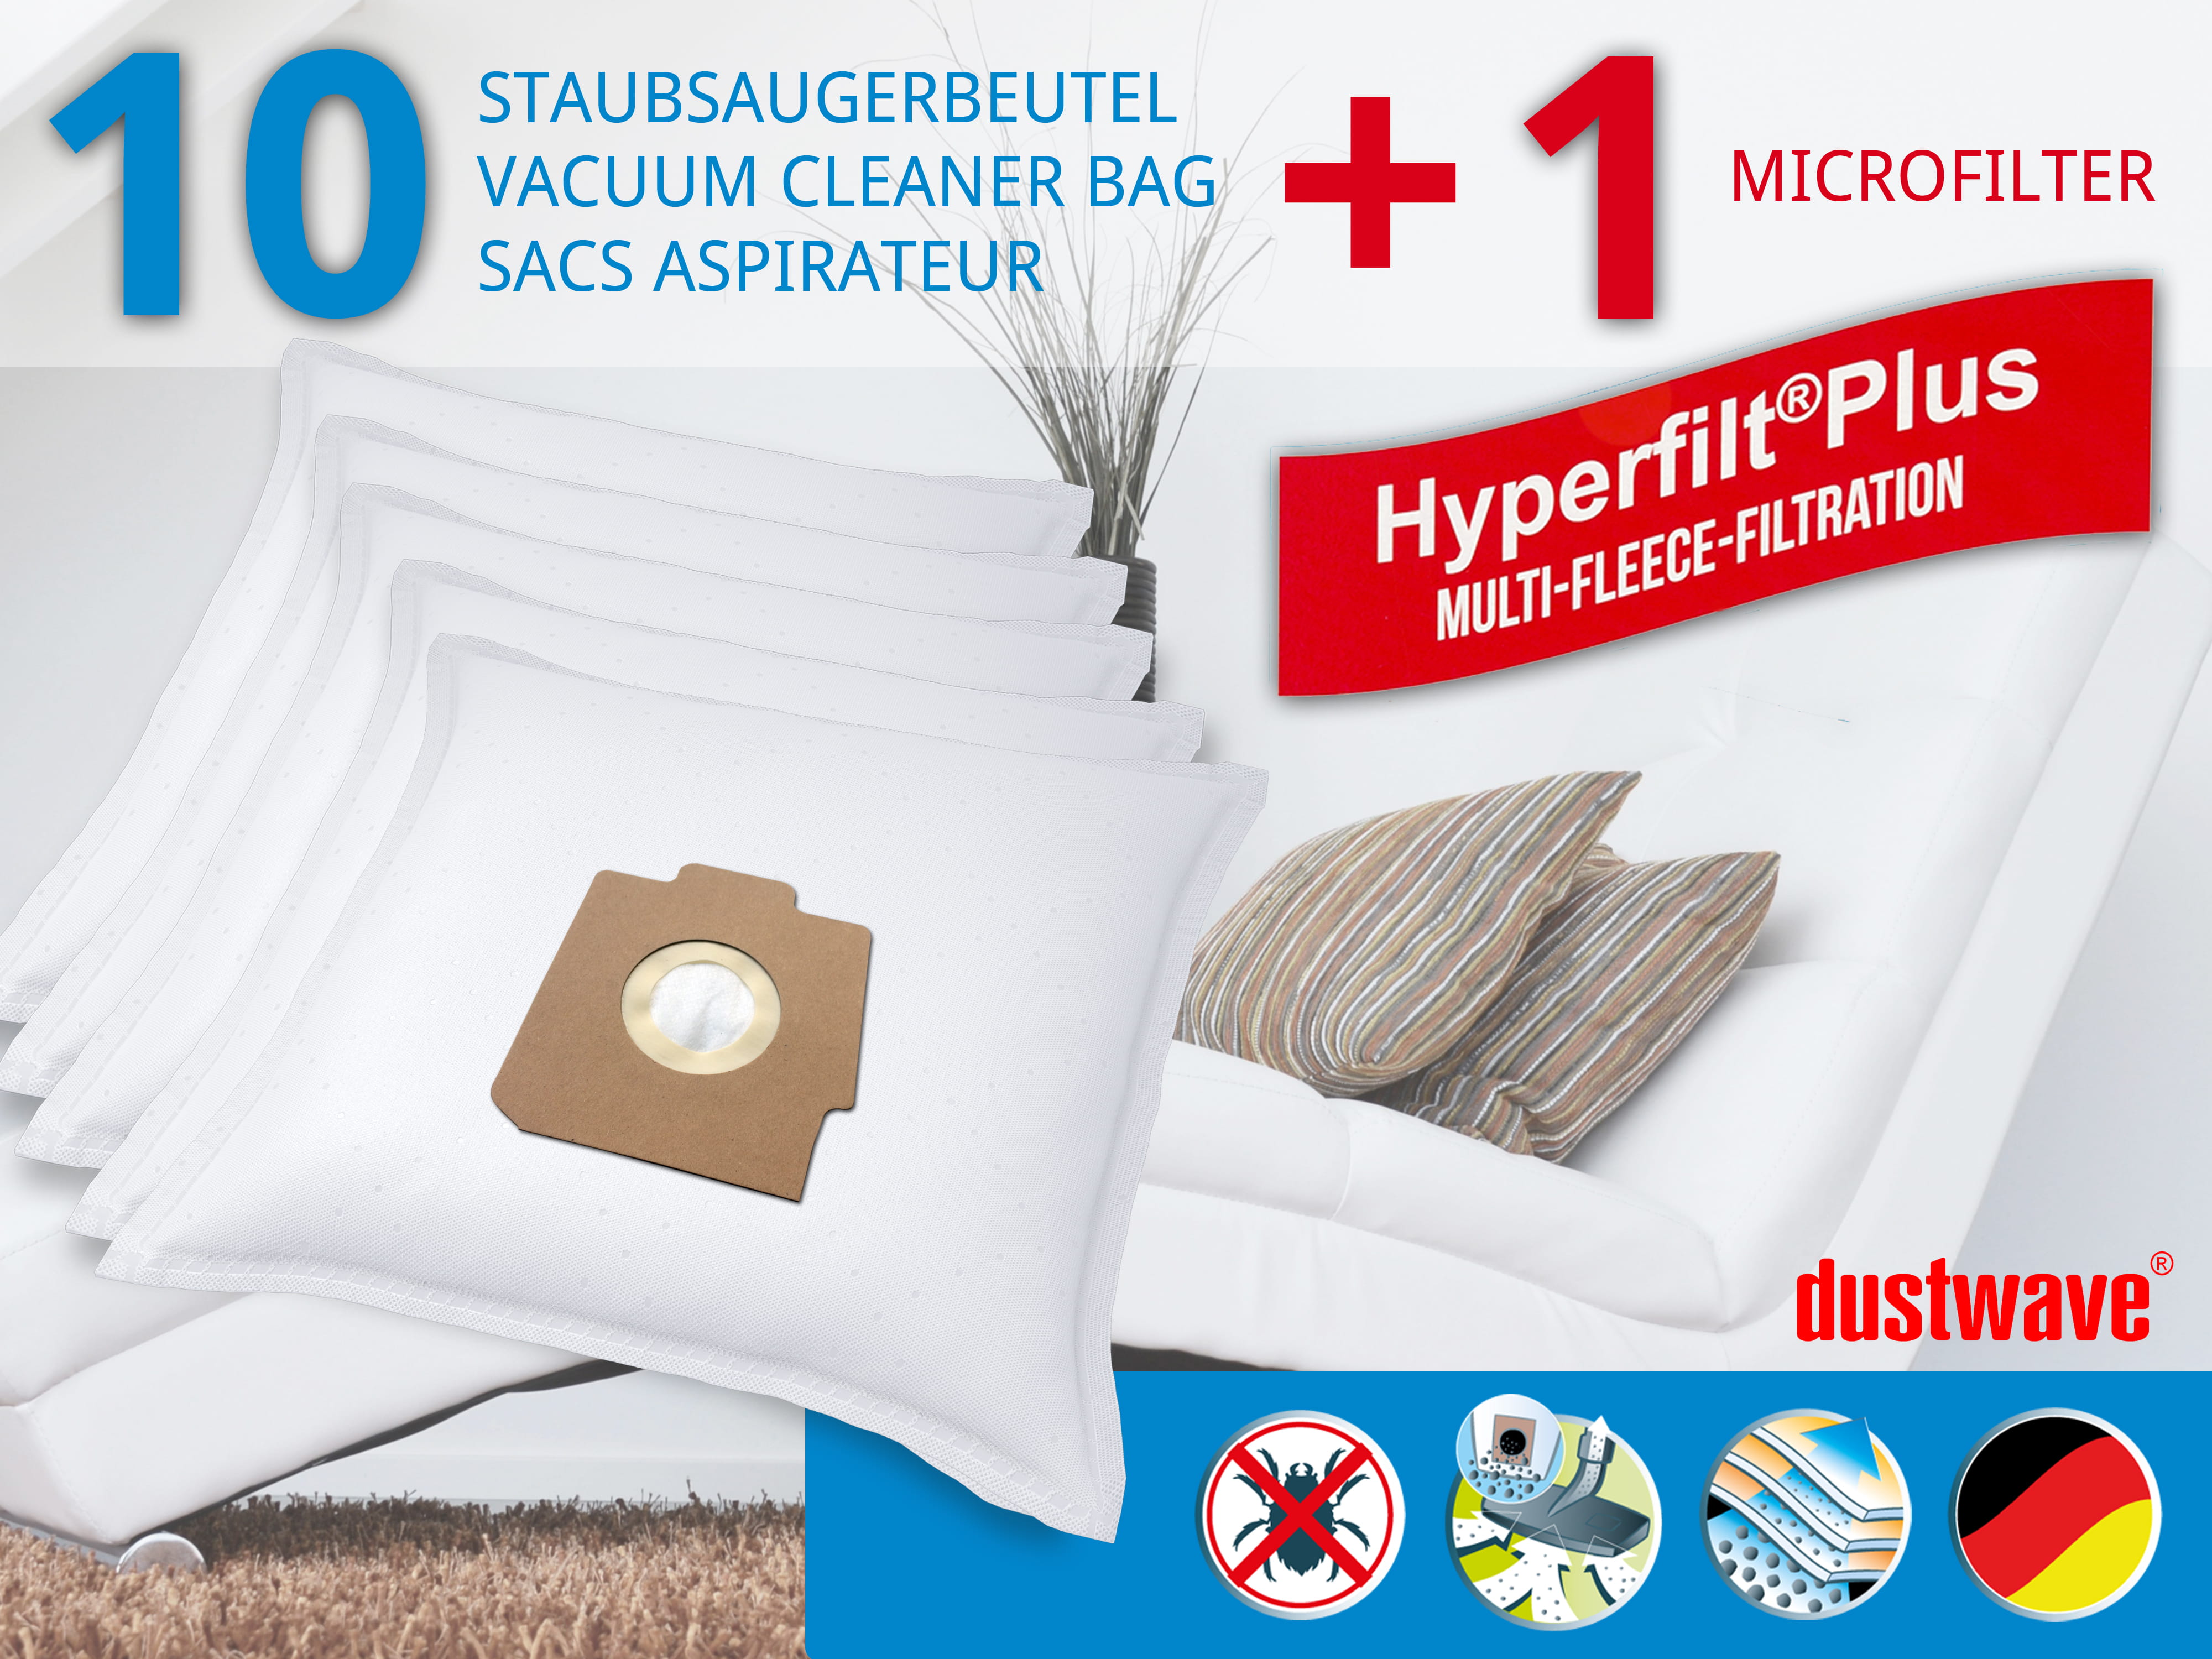 Dustwave® 10 Staubsaugerbeutel für Hoover S3934151 / TRS3934151 - hocheffizient, mehrlagiges Mikrovlies mit Hygieneverschluss - Made in Germany